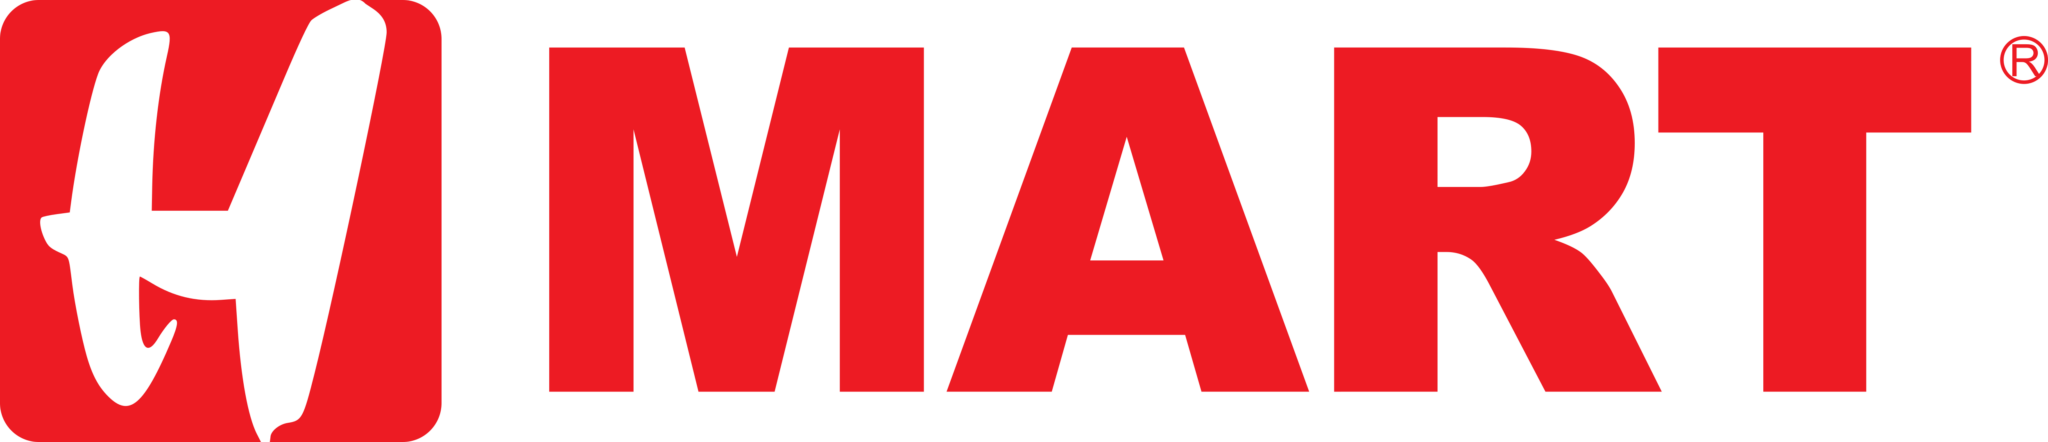 H Mart – Logos Download